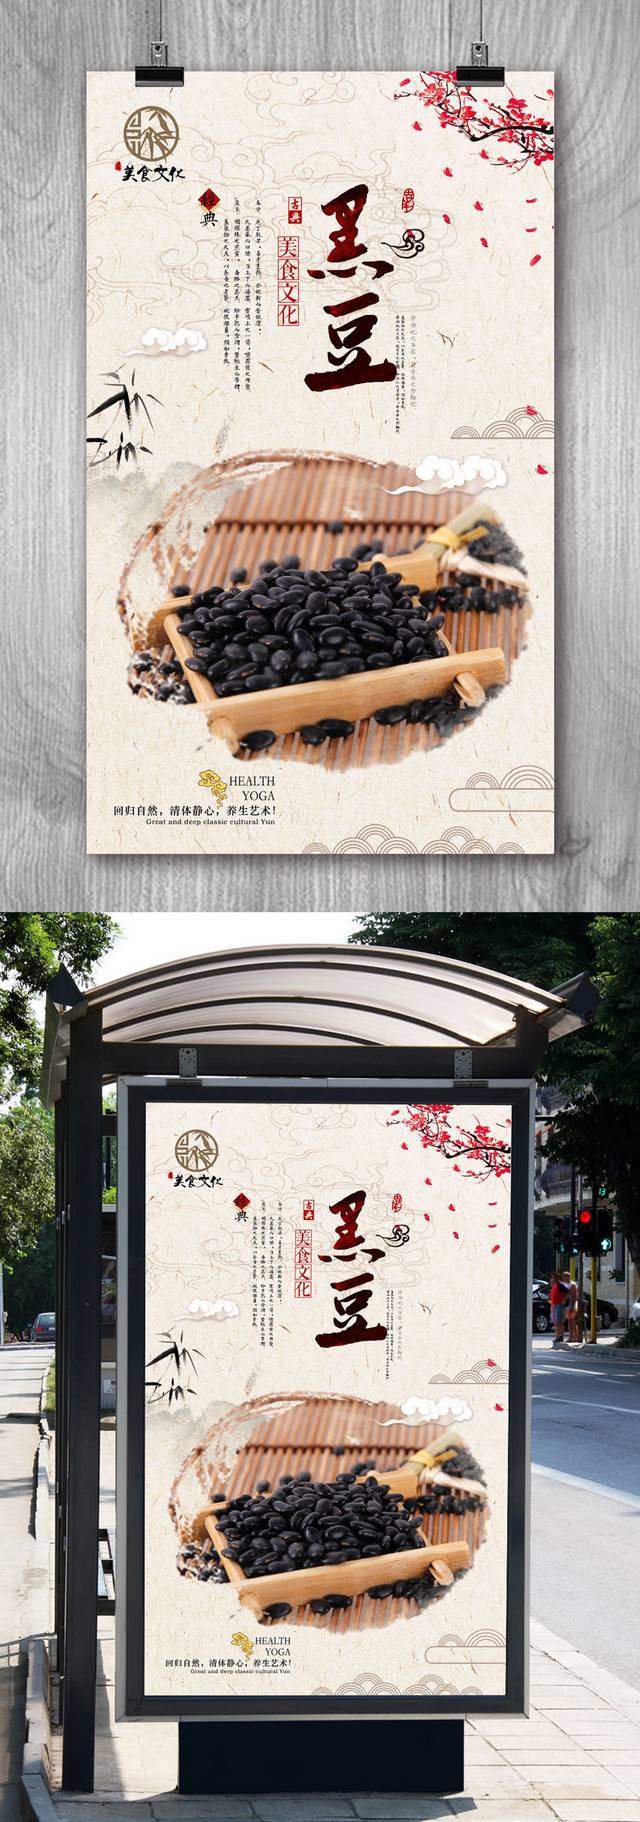 精美优质黑豆宣传海报设计